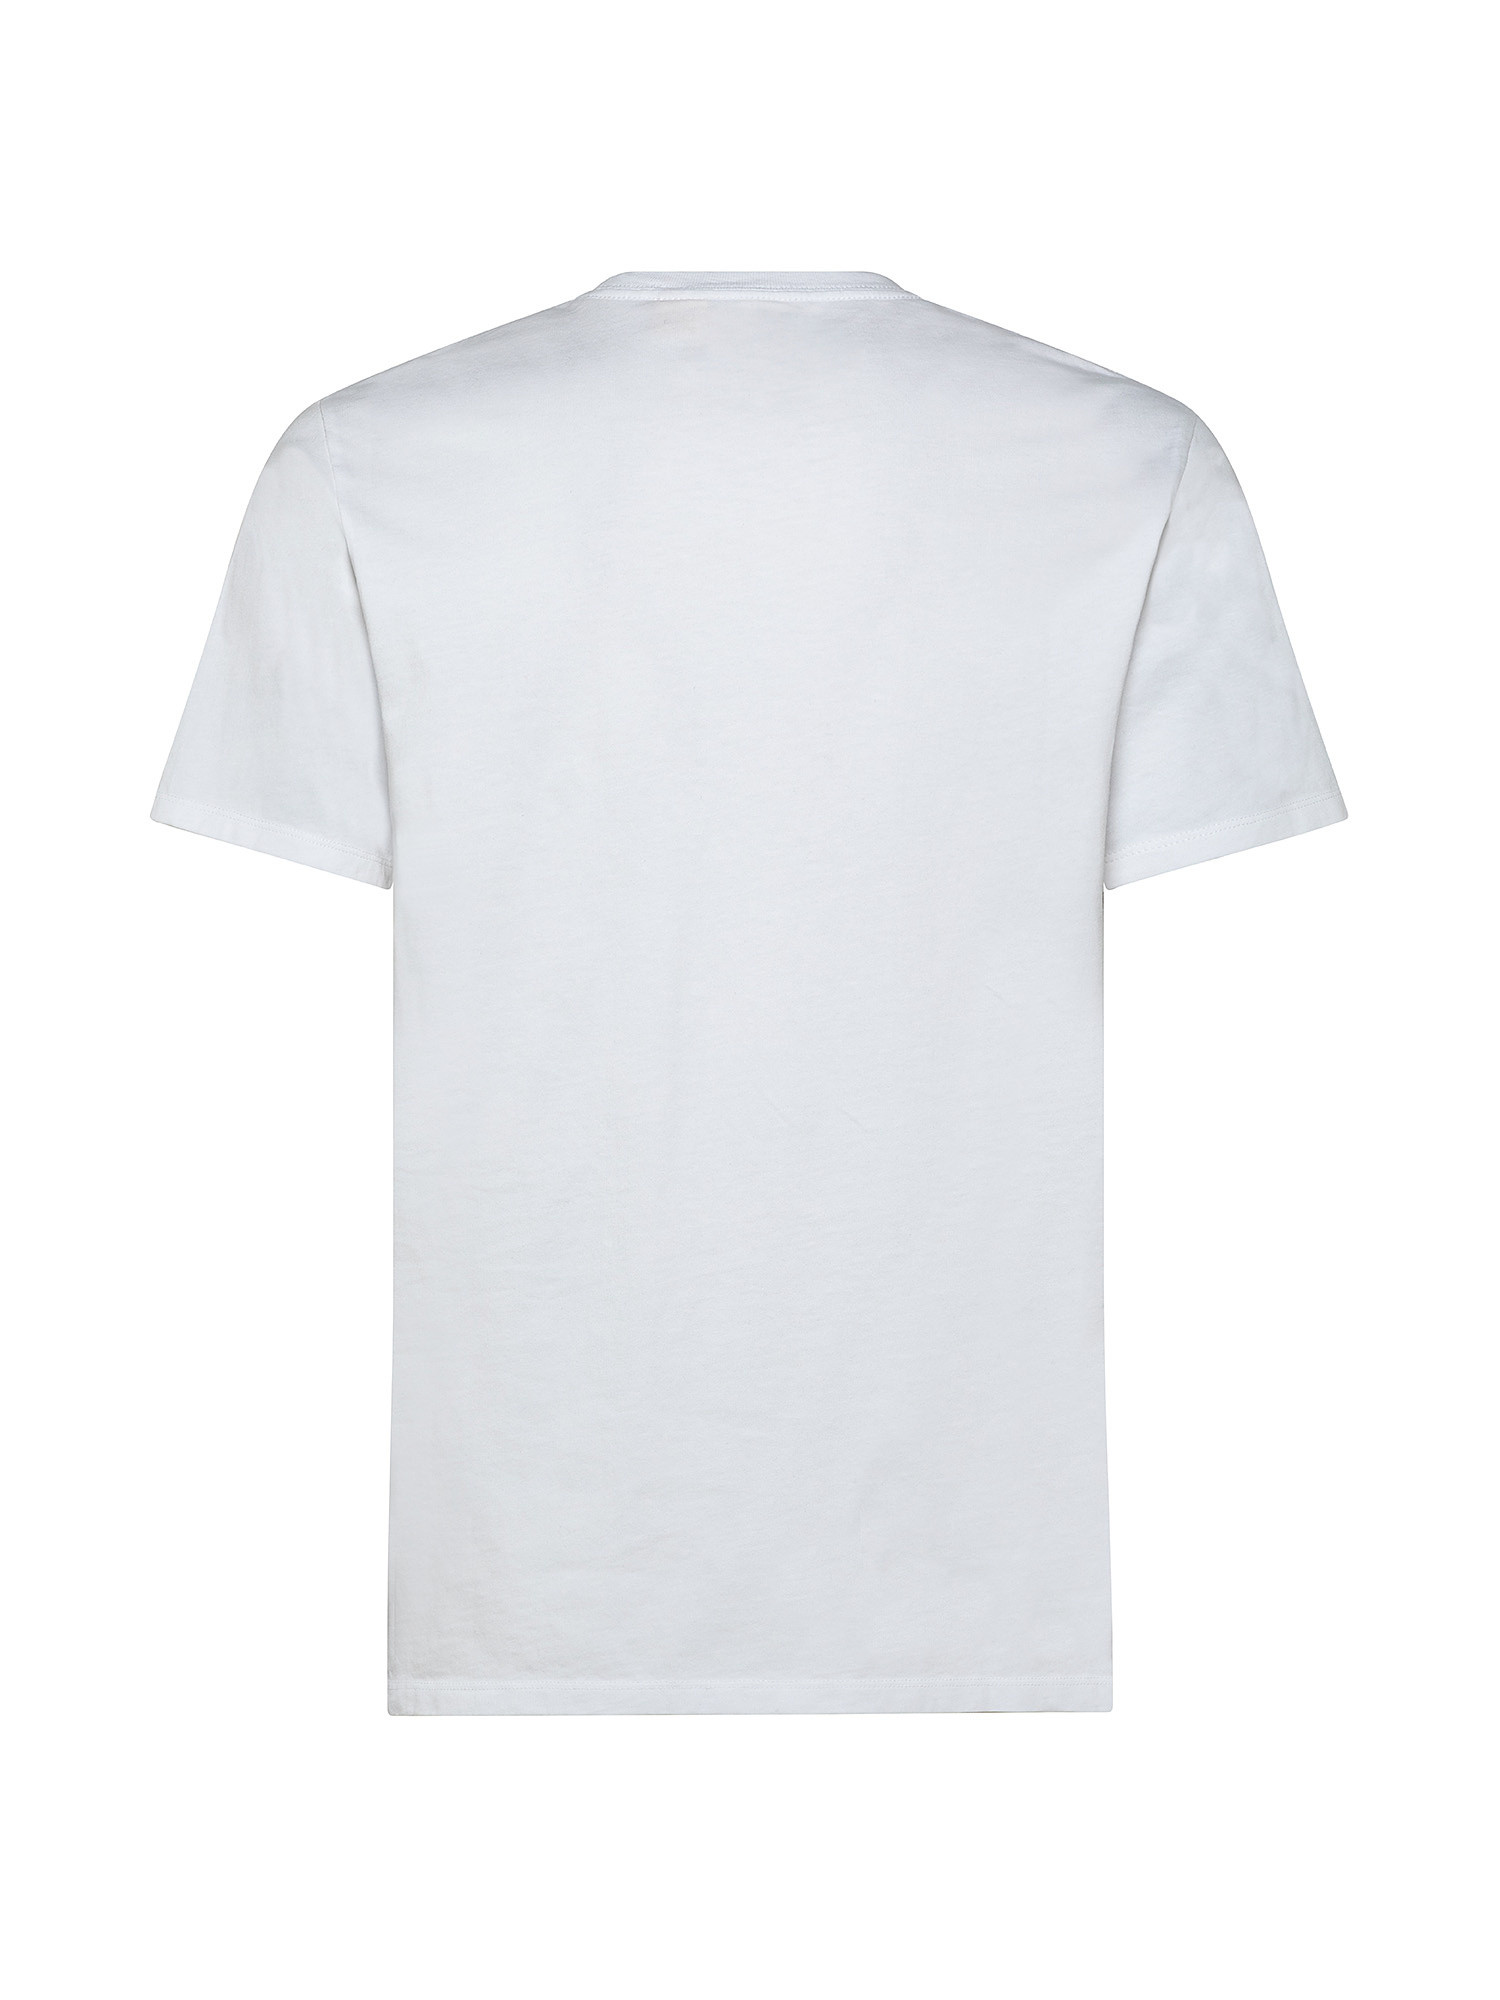 Original logo T-shirt, White, large image number 1